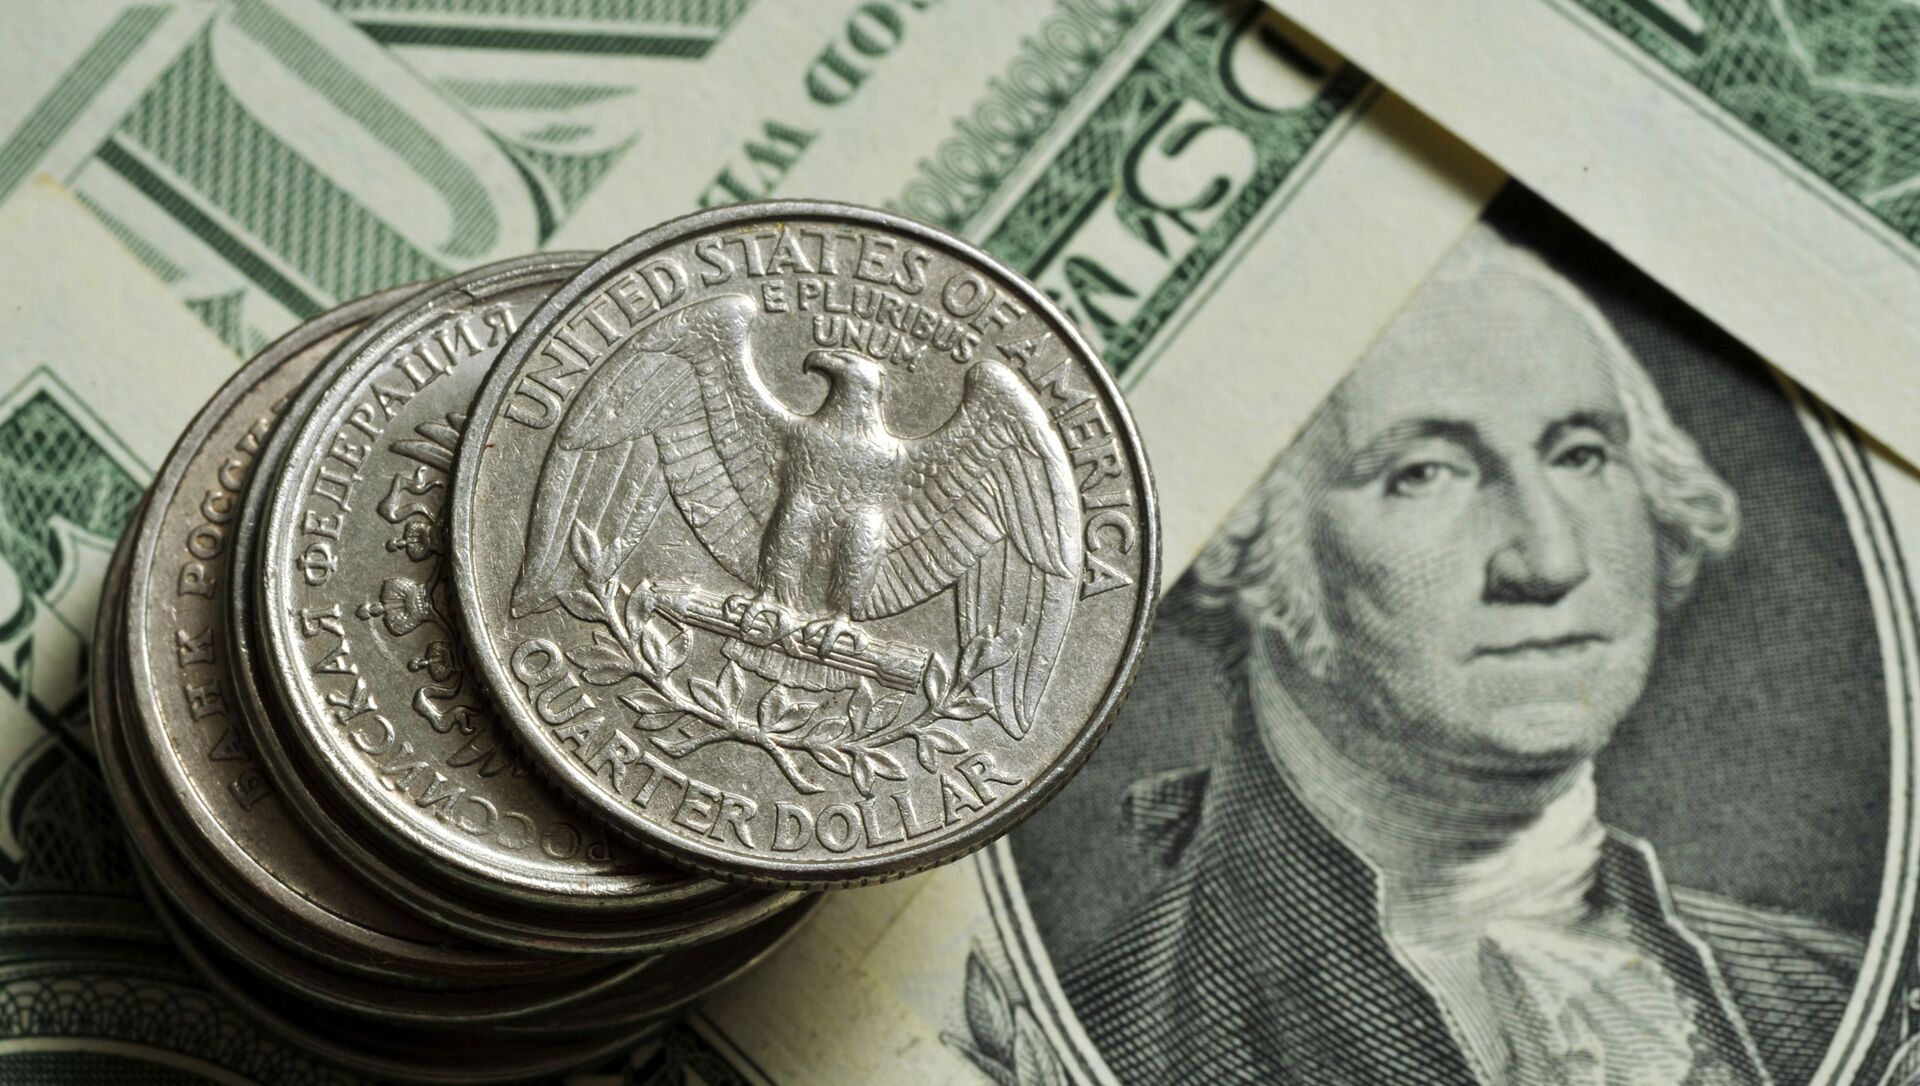 Монеты различного номинала Монетного двора США на фоне банкноты номиналом 1 доллар США. - Sputnik Армения, 1920, 10.02.2021